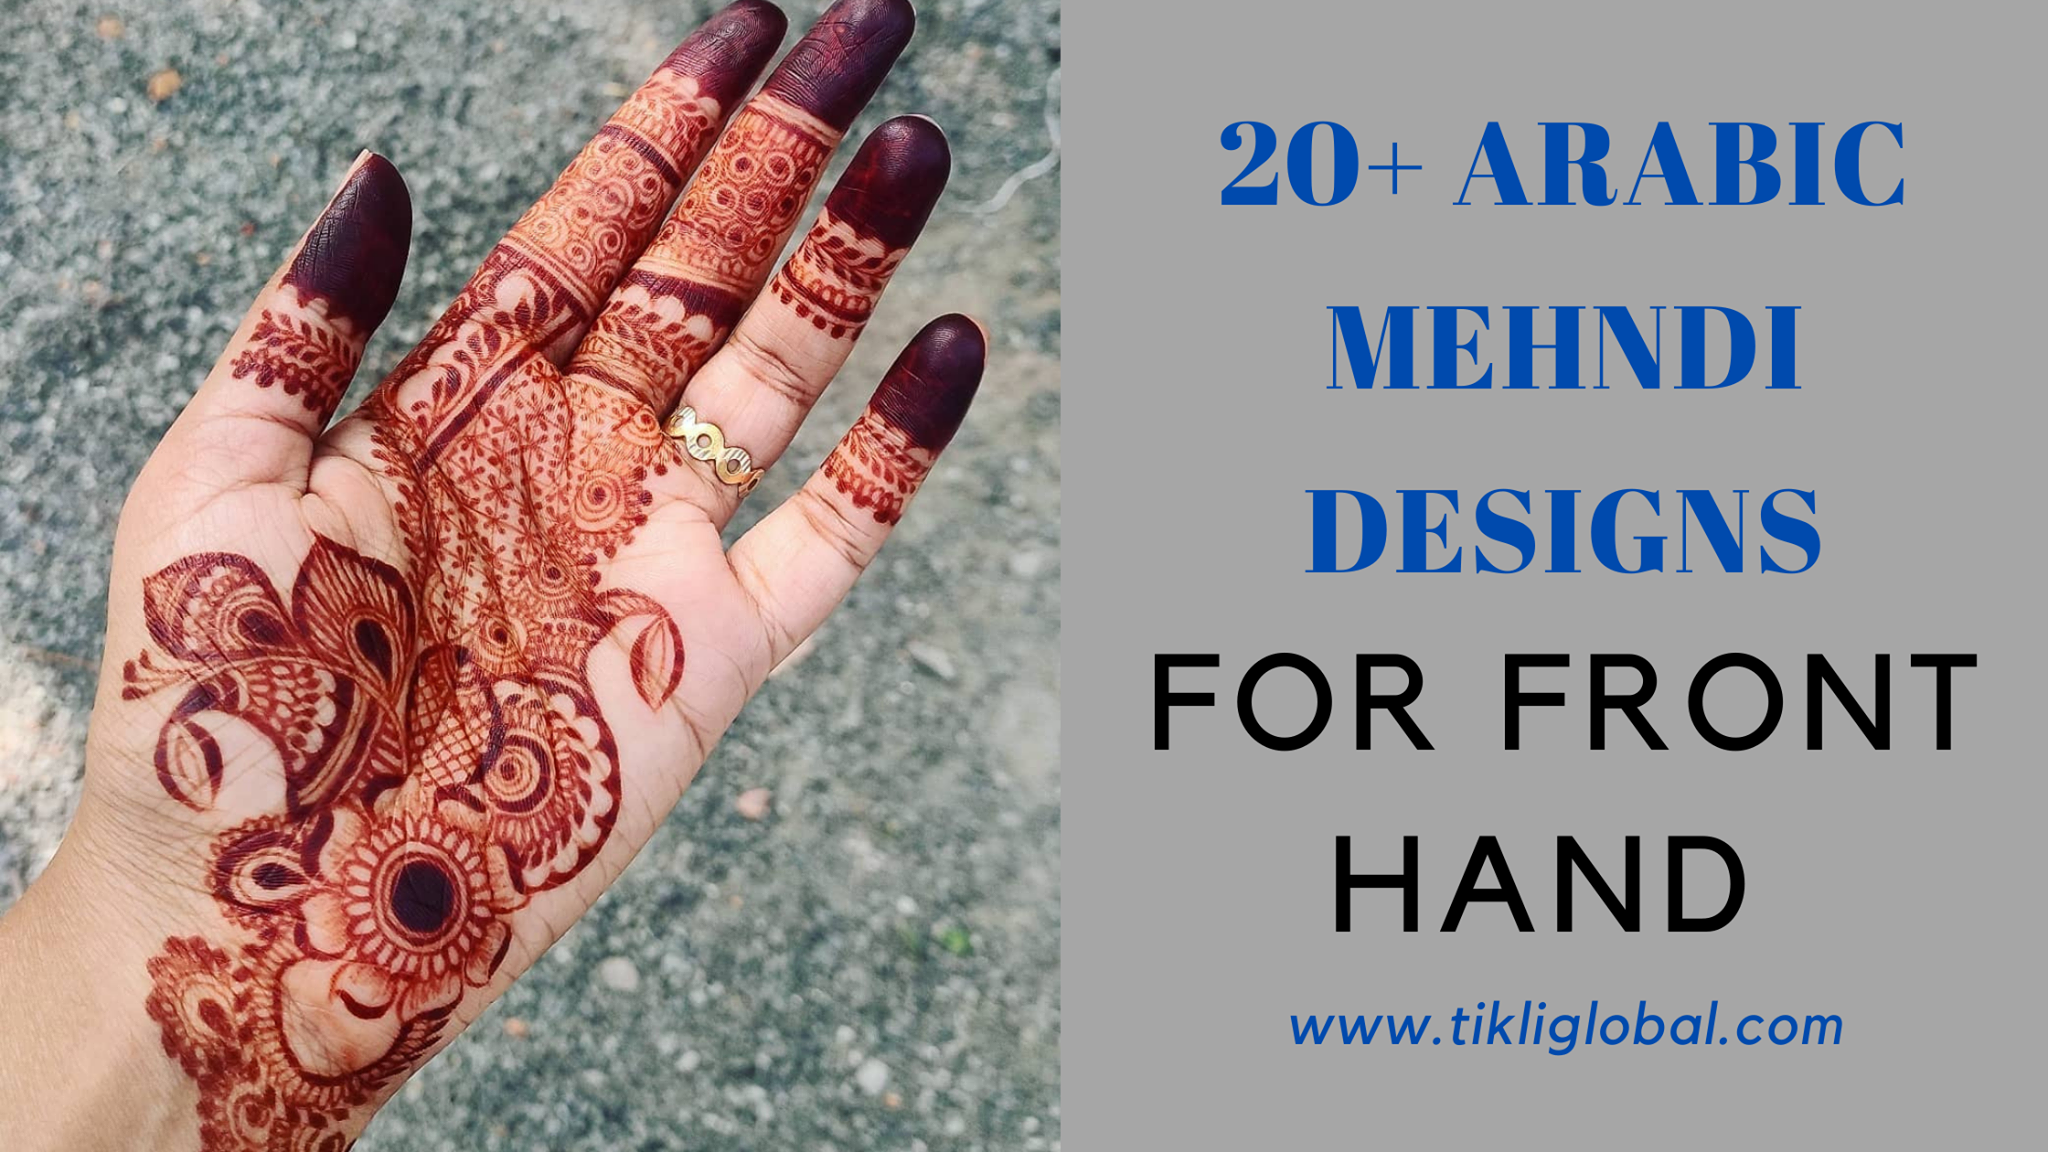 70+ Free Mehandi & Mehendi Images - Pixabay